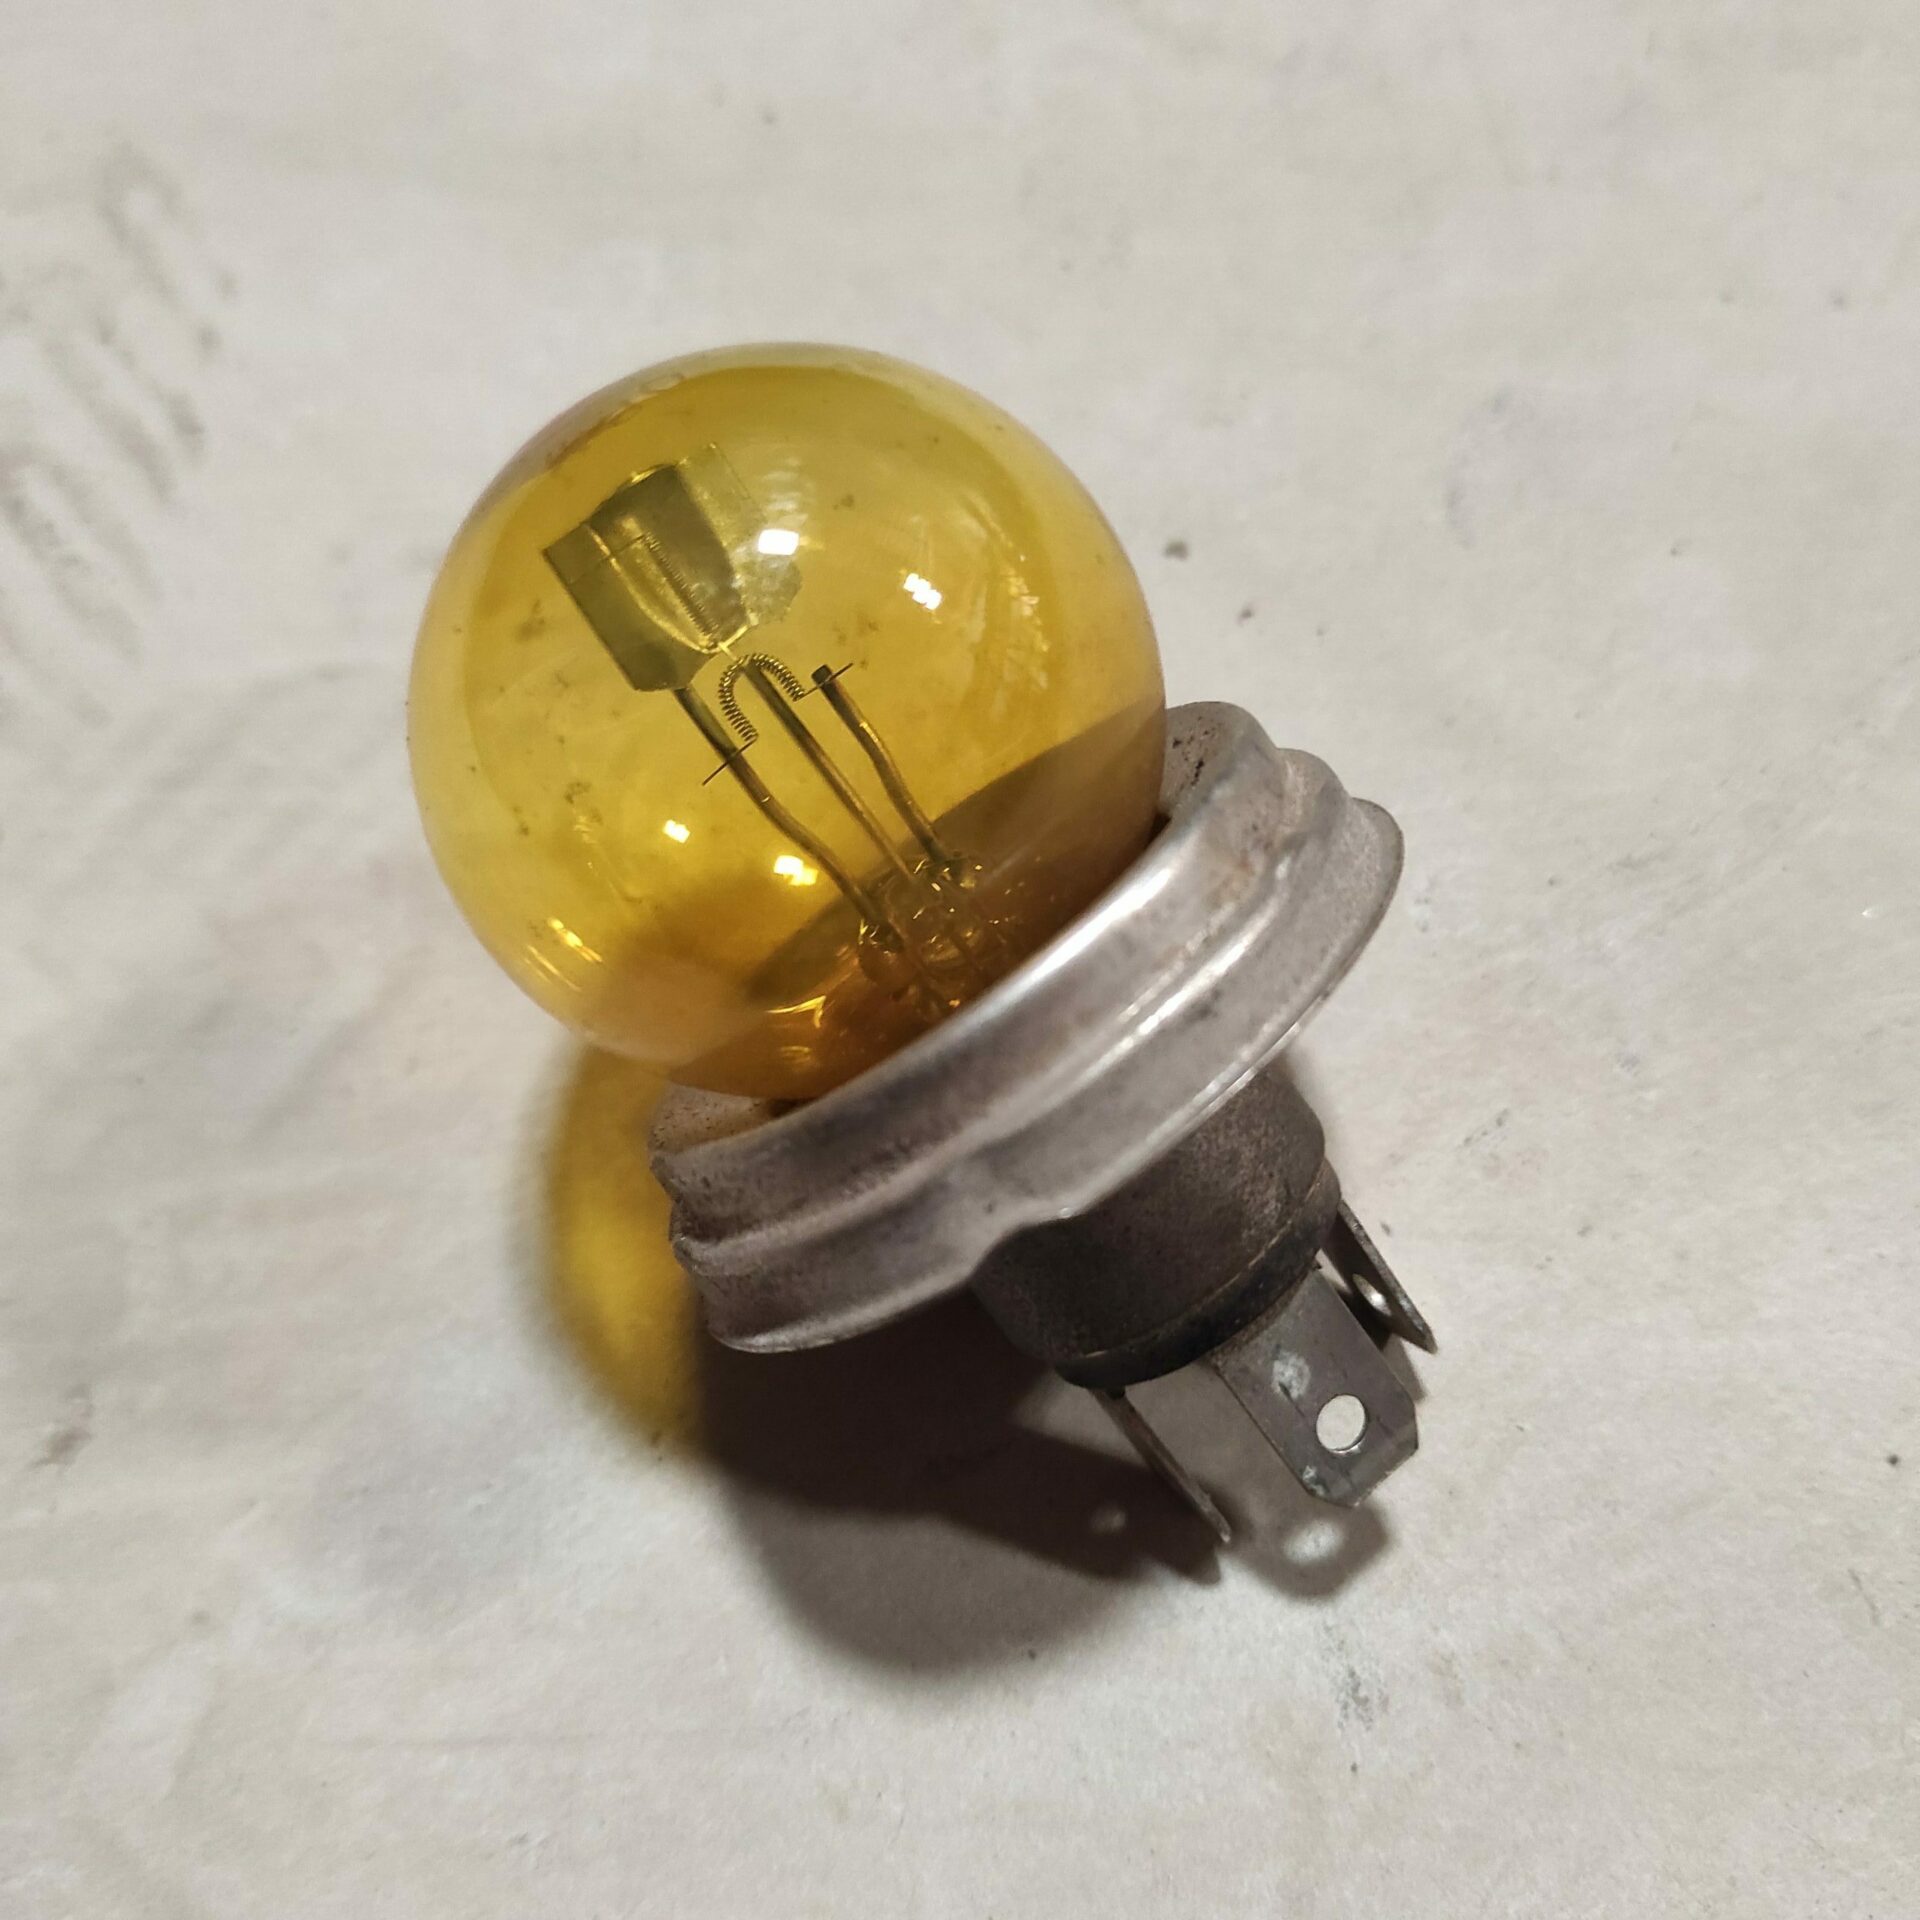 Ampoule 12V 35/35W - JAUNE - BA21d - optique de phare ACMA